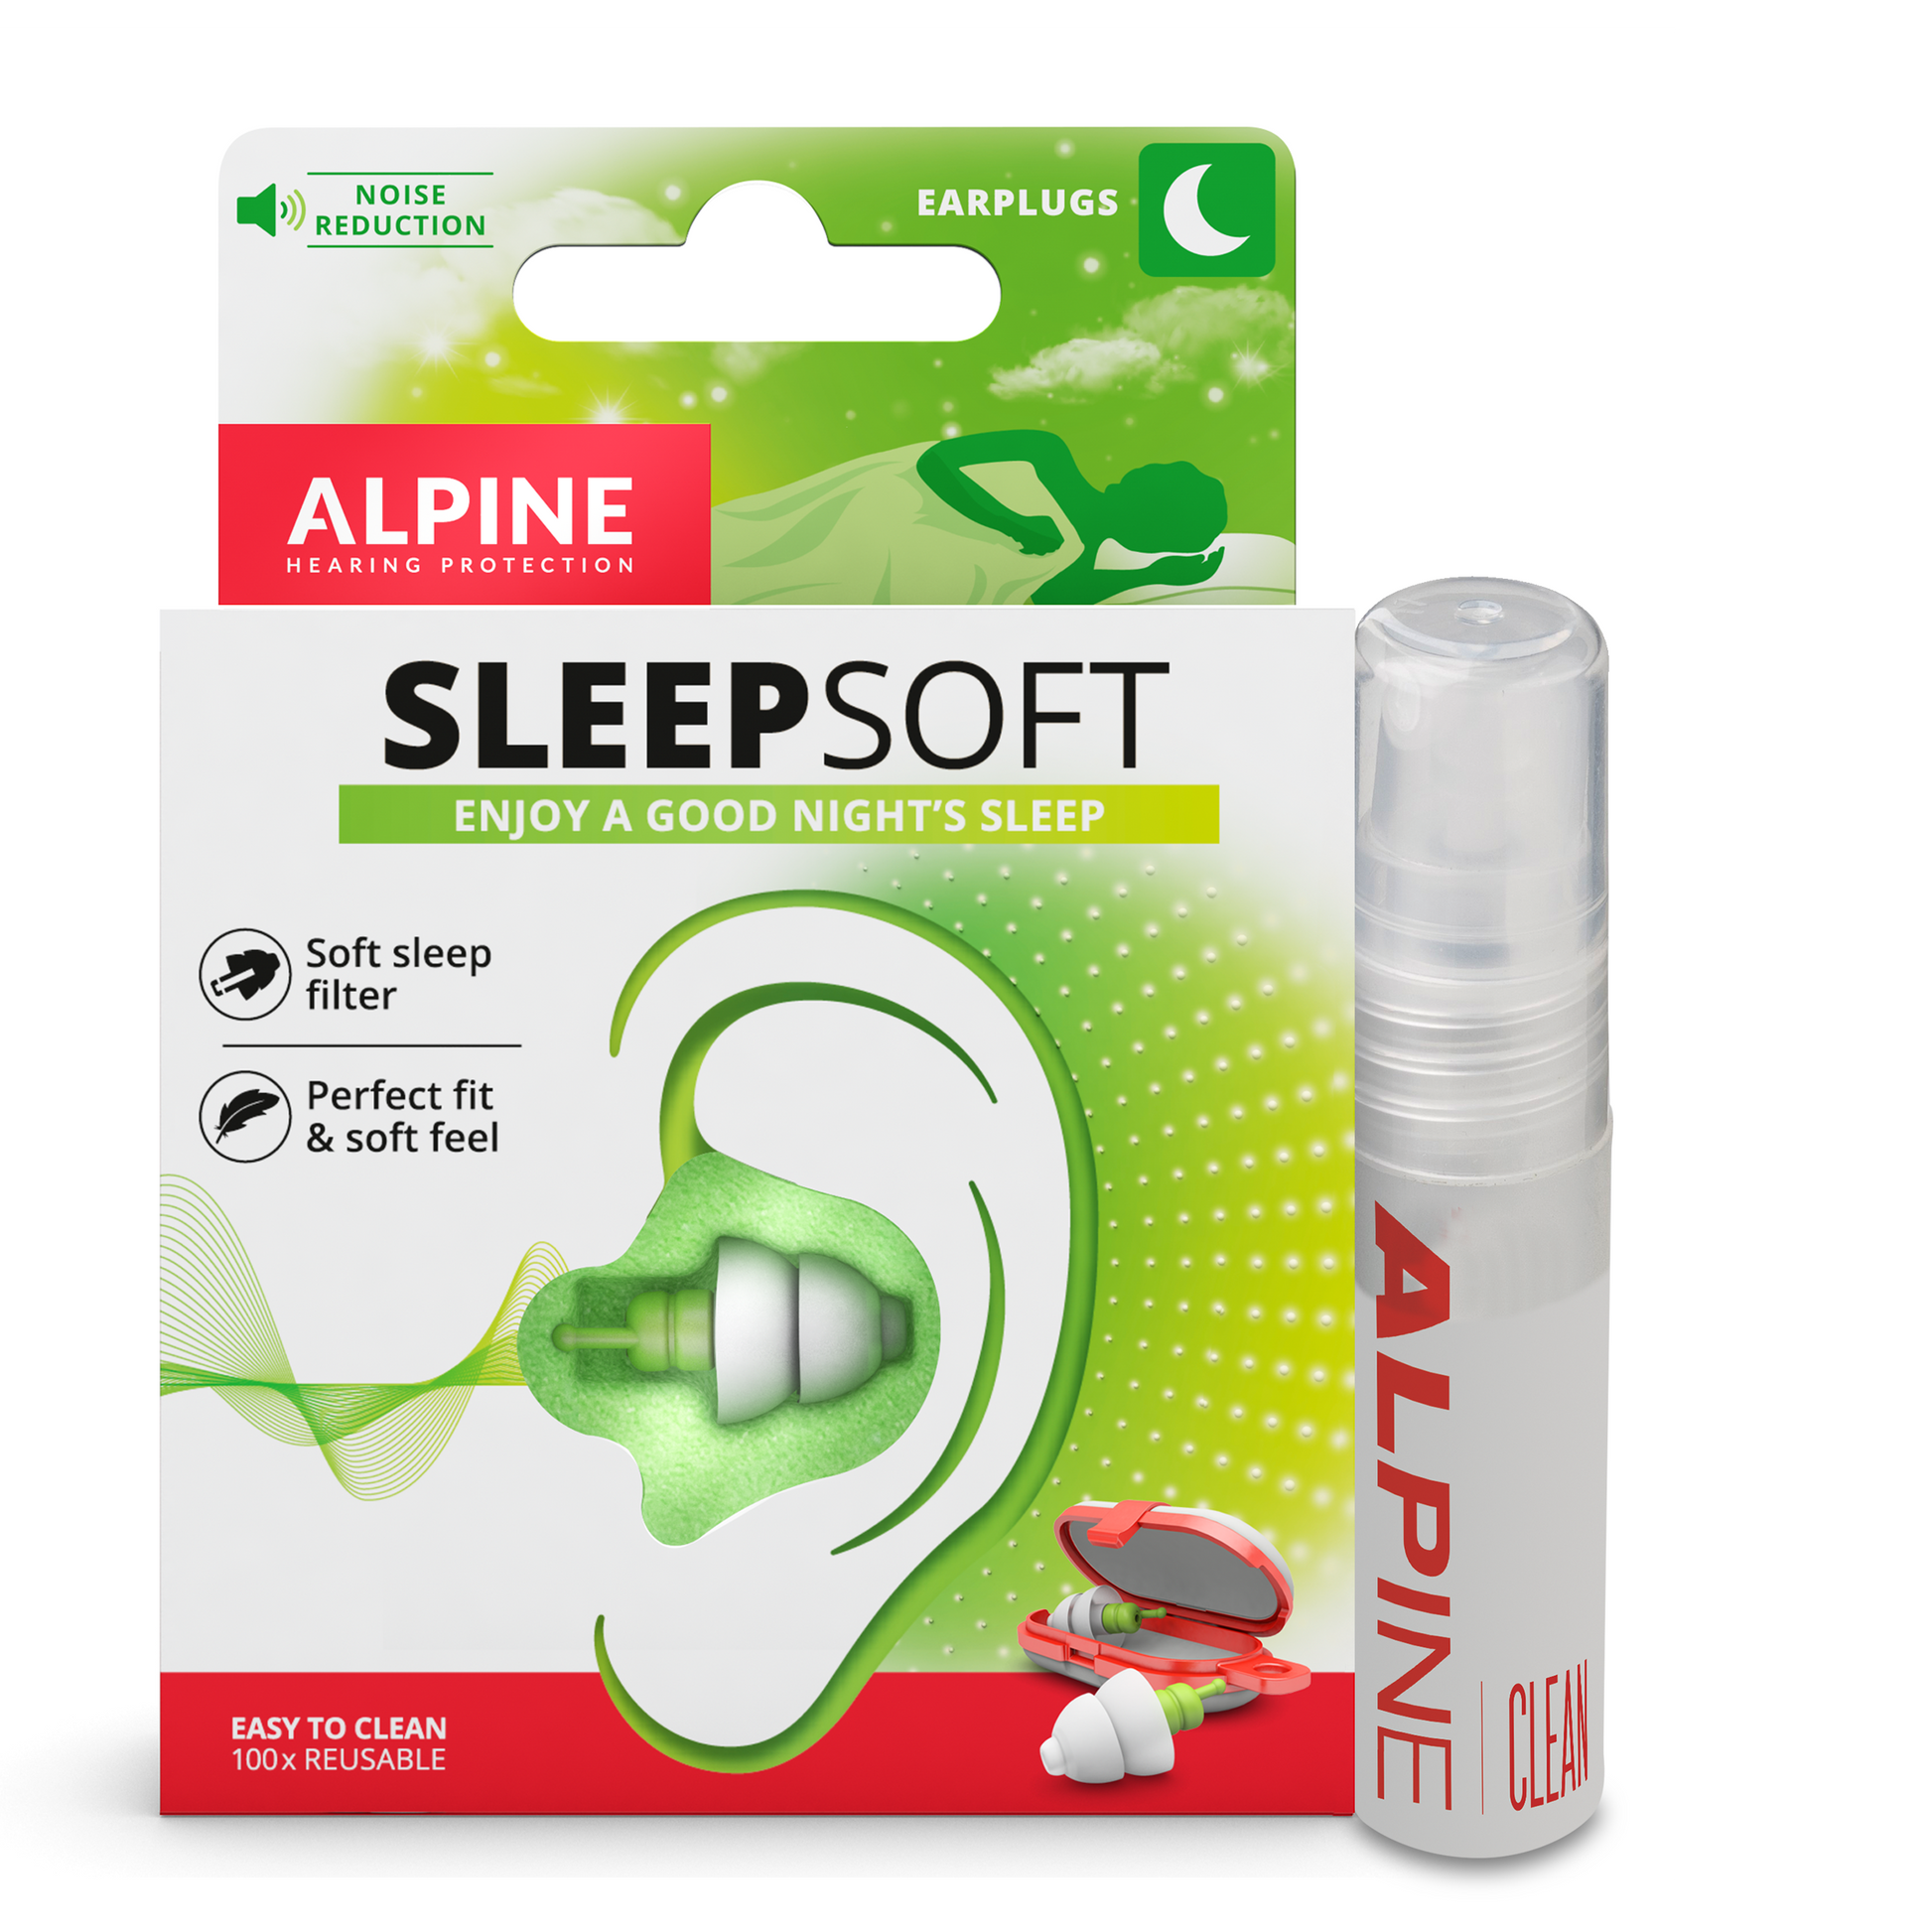 Alpine SleepSoft oordoppen en Clean voor een goede nachtrust